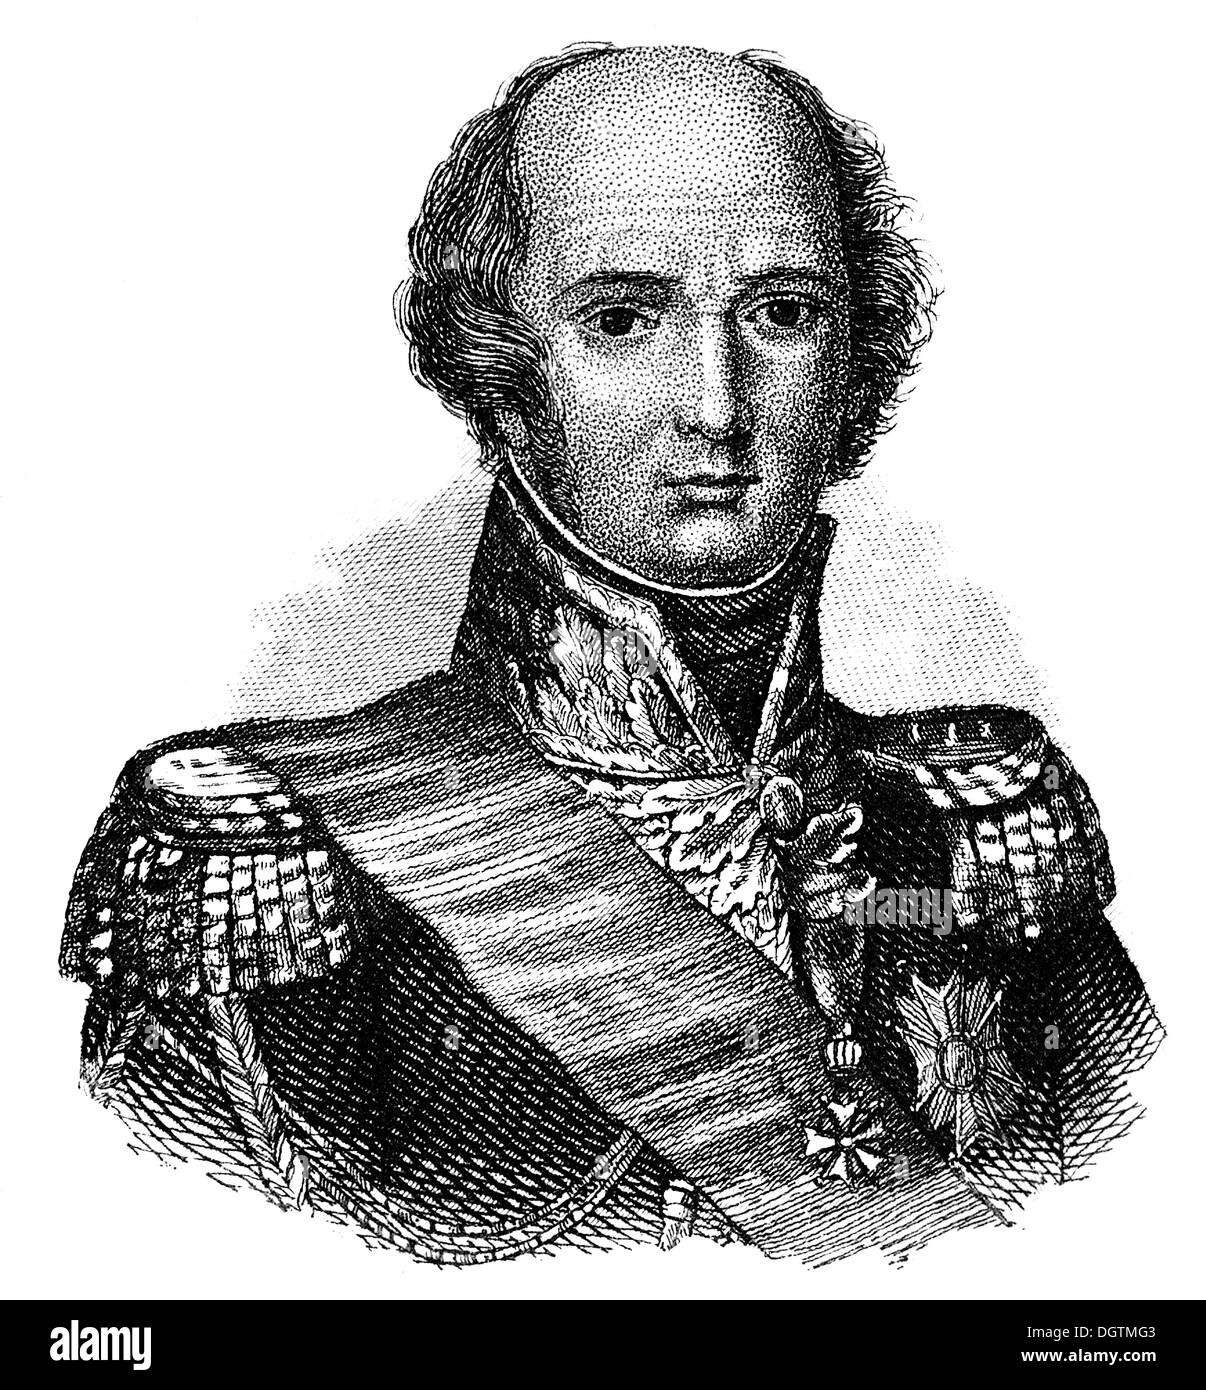 Louis-Nicolas d'Avout or Davout, 1st Duke of Auerstaedt, 1st